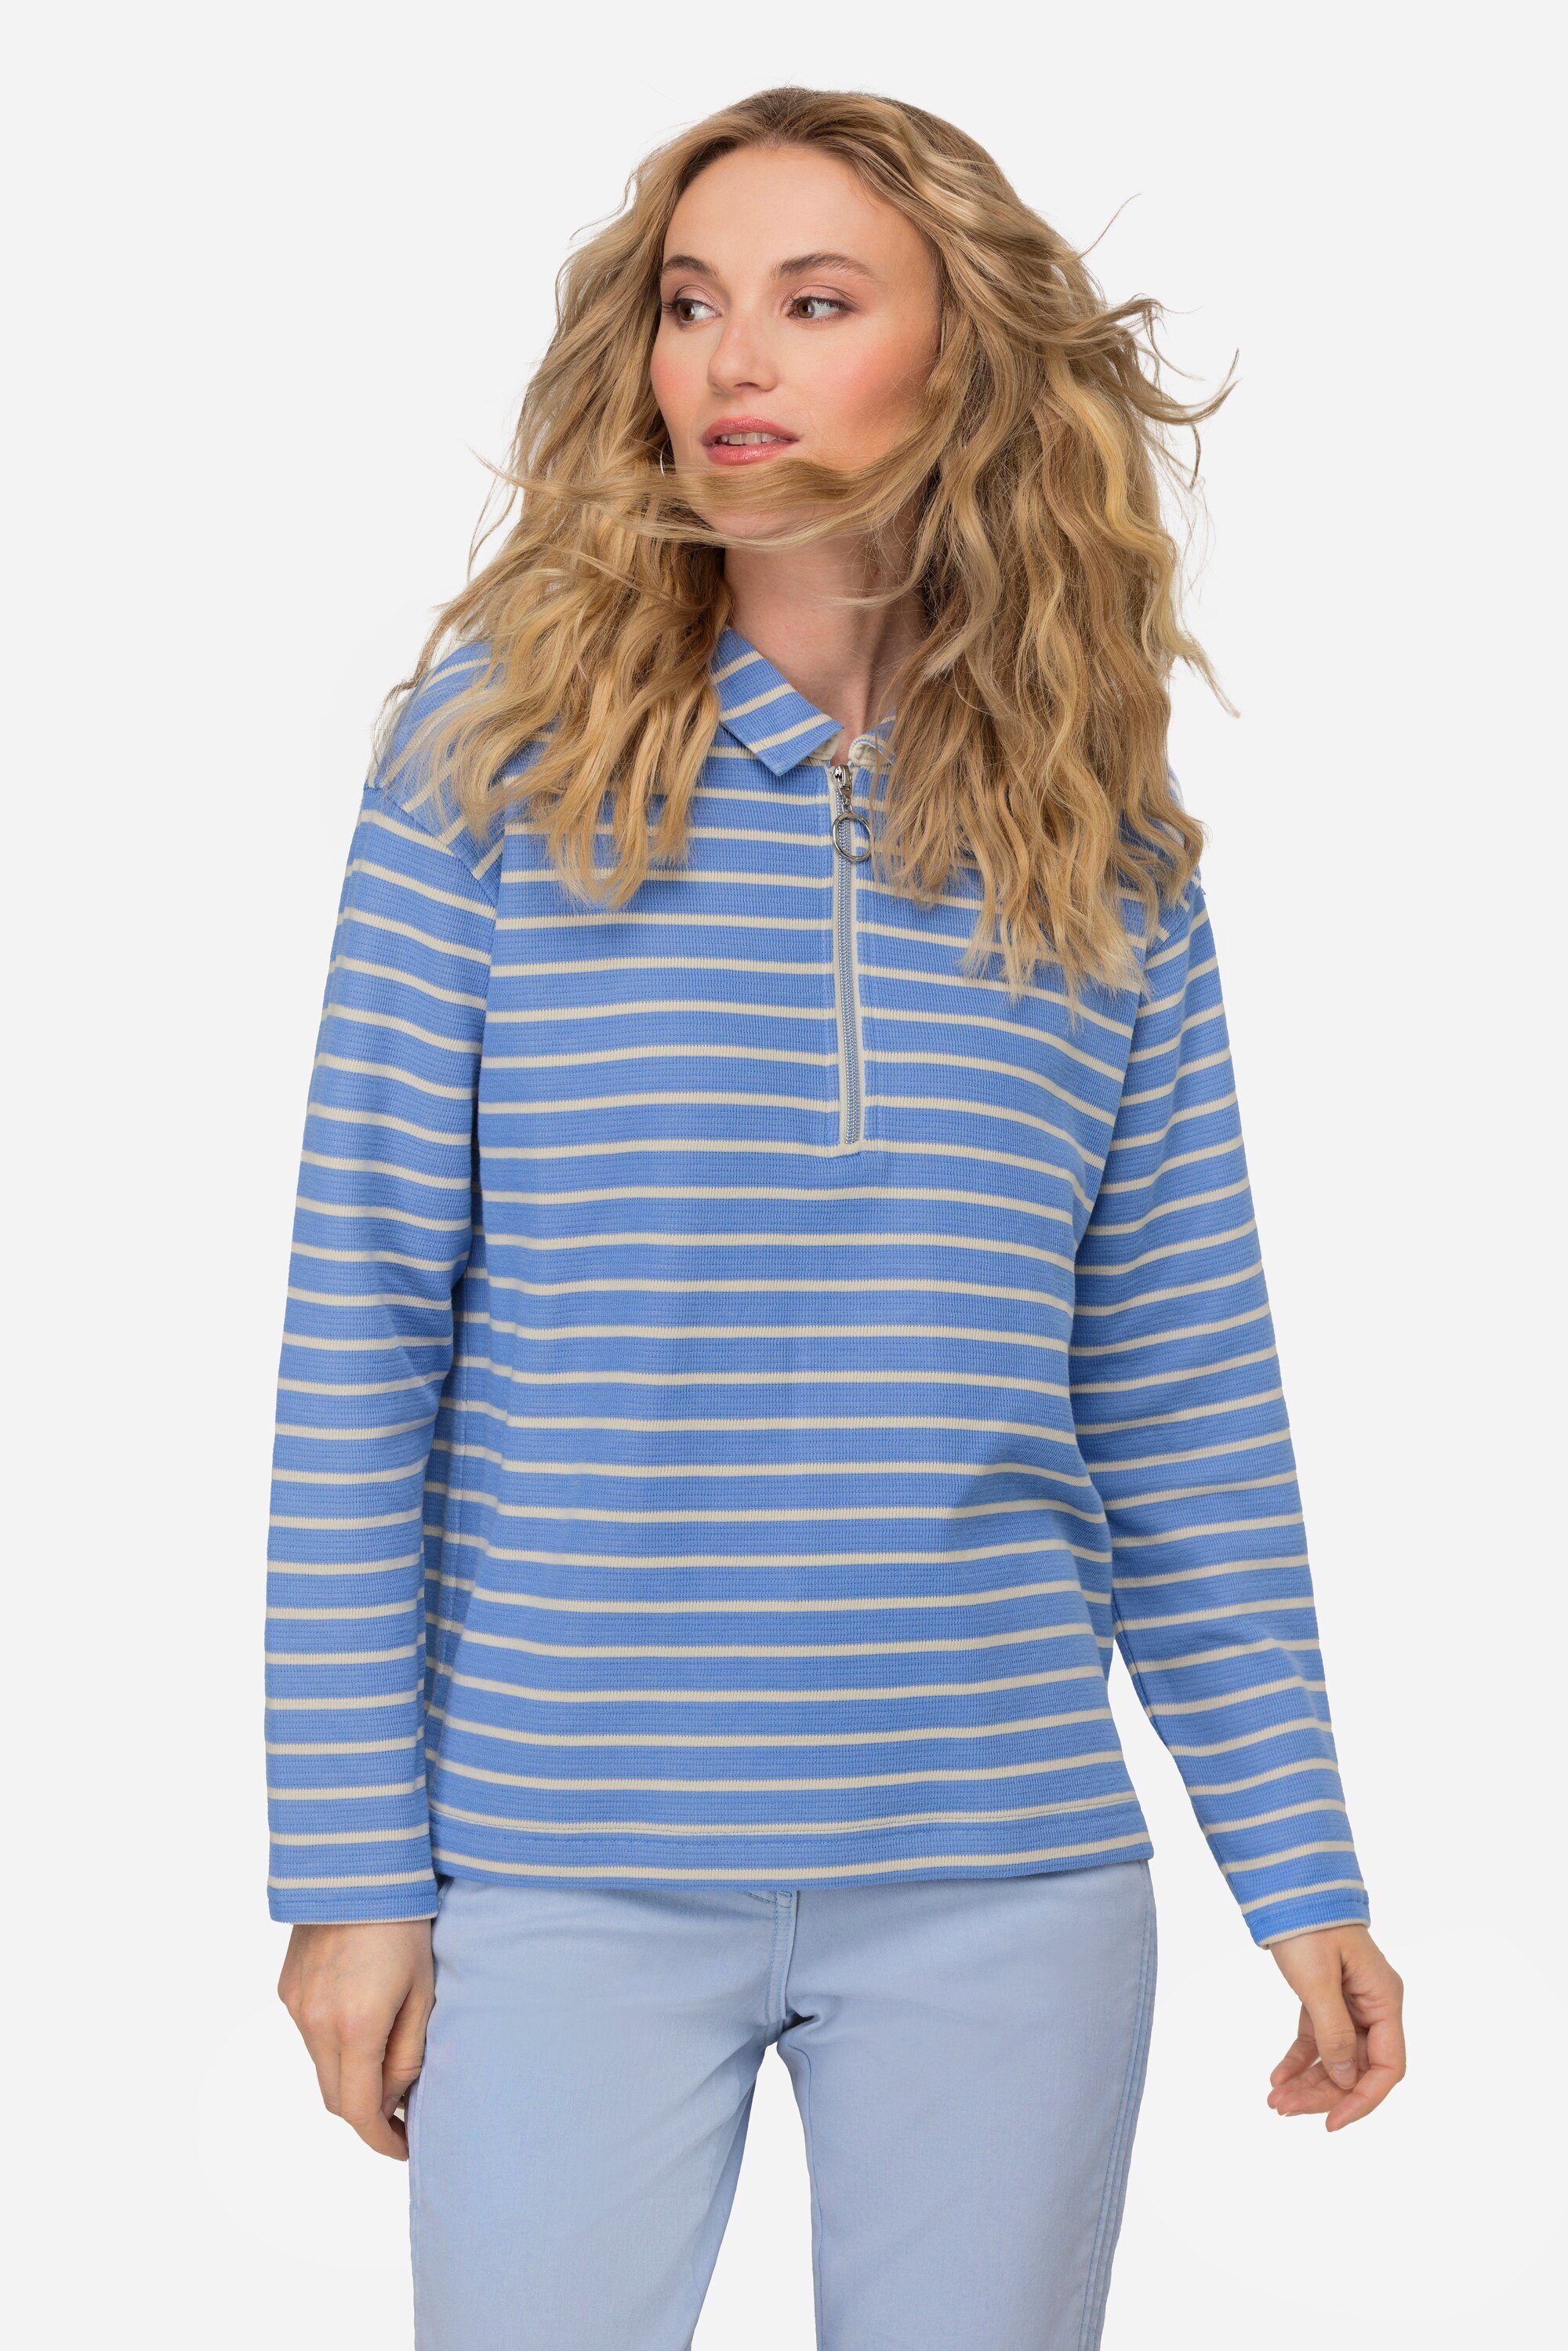 Laurasøn Sweatshirt Sweatshirt Ringel Polokragen Langarm wolkenblau